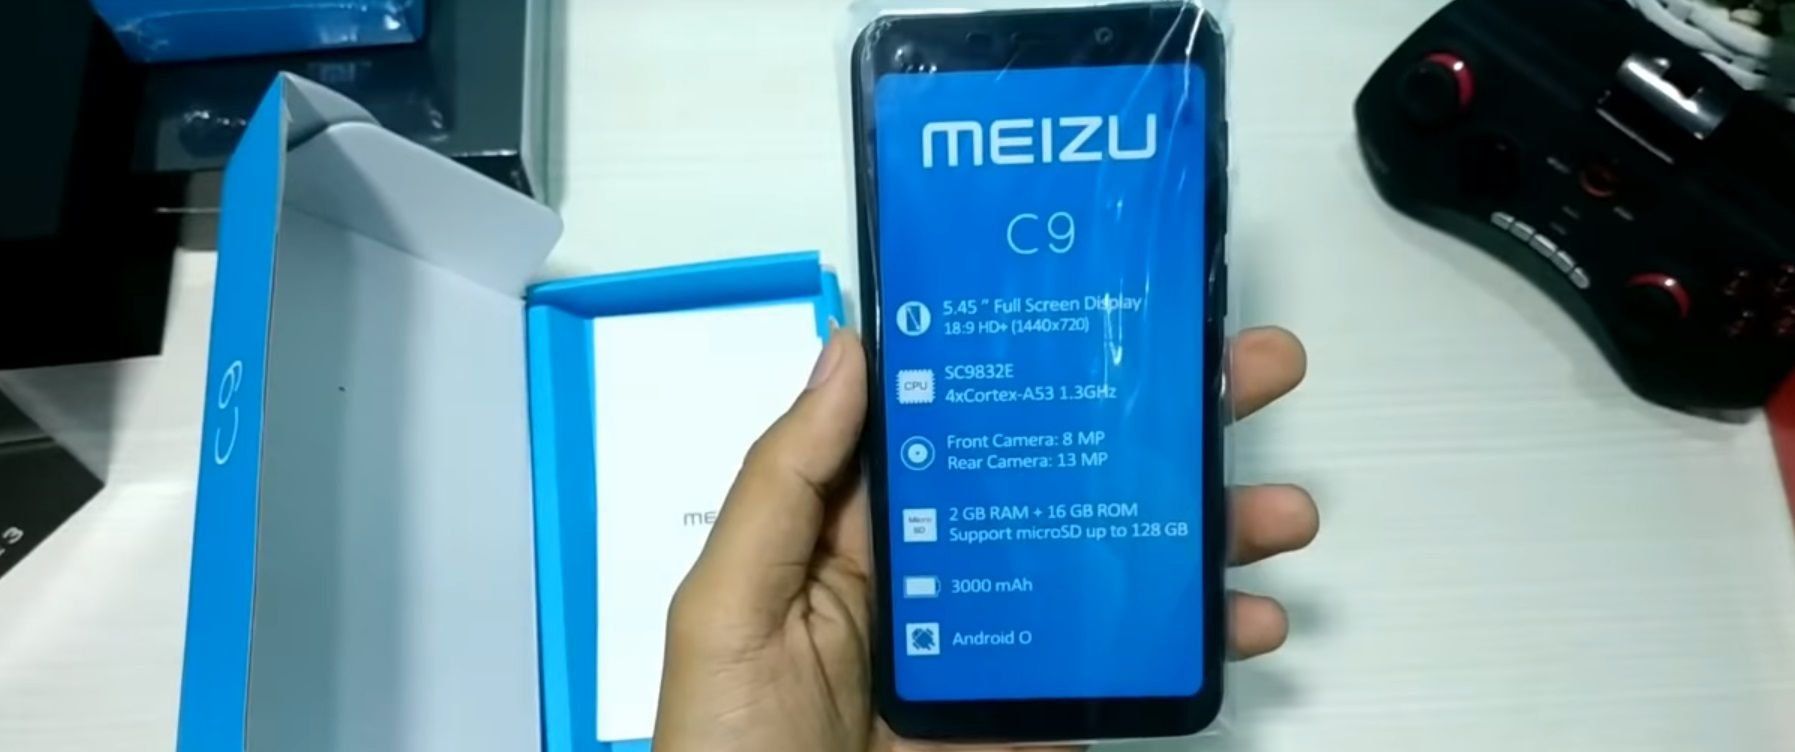 Meizu C9 og C9 Pro smarttelefoner - fordeler og ulemper